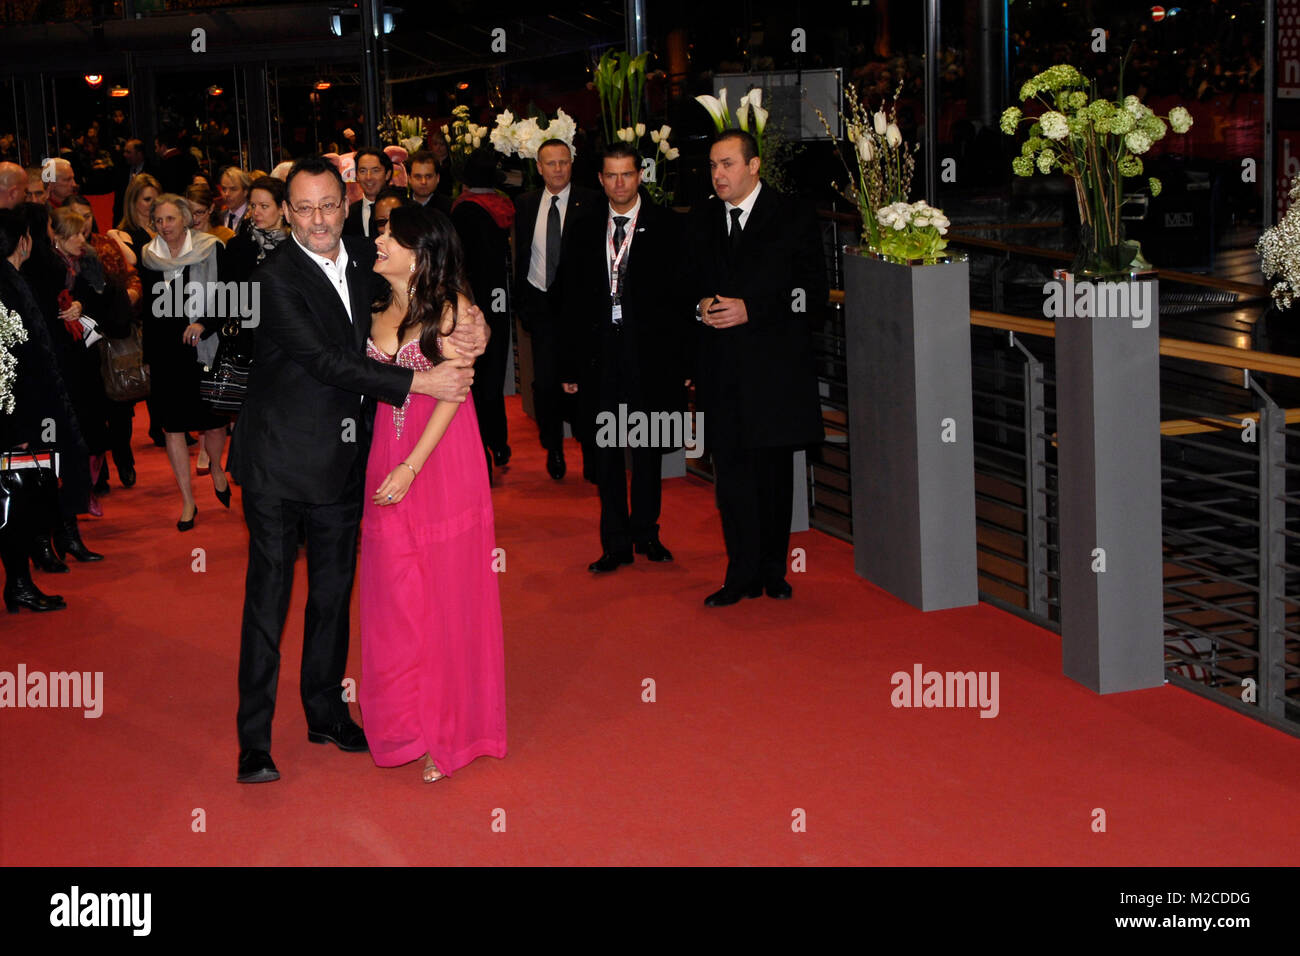 Wis Jean Reno und Aishwarya Rai Bachchan bei der Premiere zu dem Film "Pink Panther 2 Sterben" (Der Rosarote Panther 2) im Rahmen der 59. Berlinale am 13.02.2009/Foto: Clemens Niehaus Stockfoto